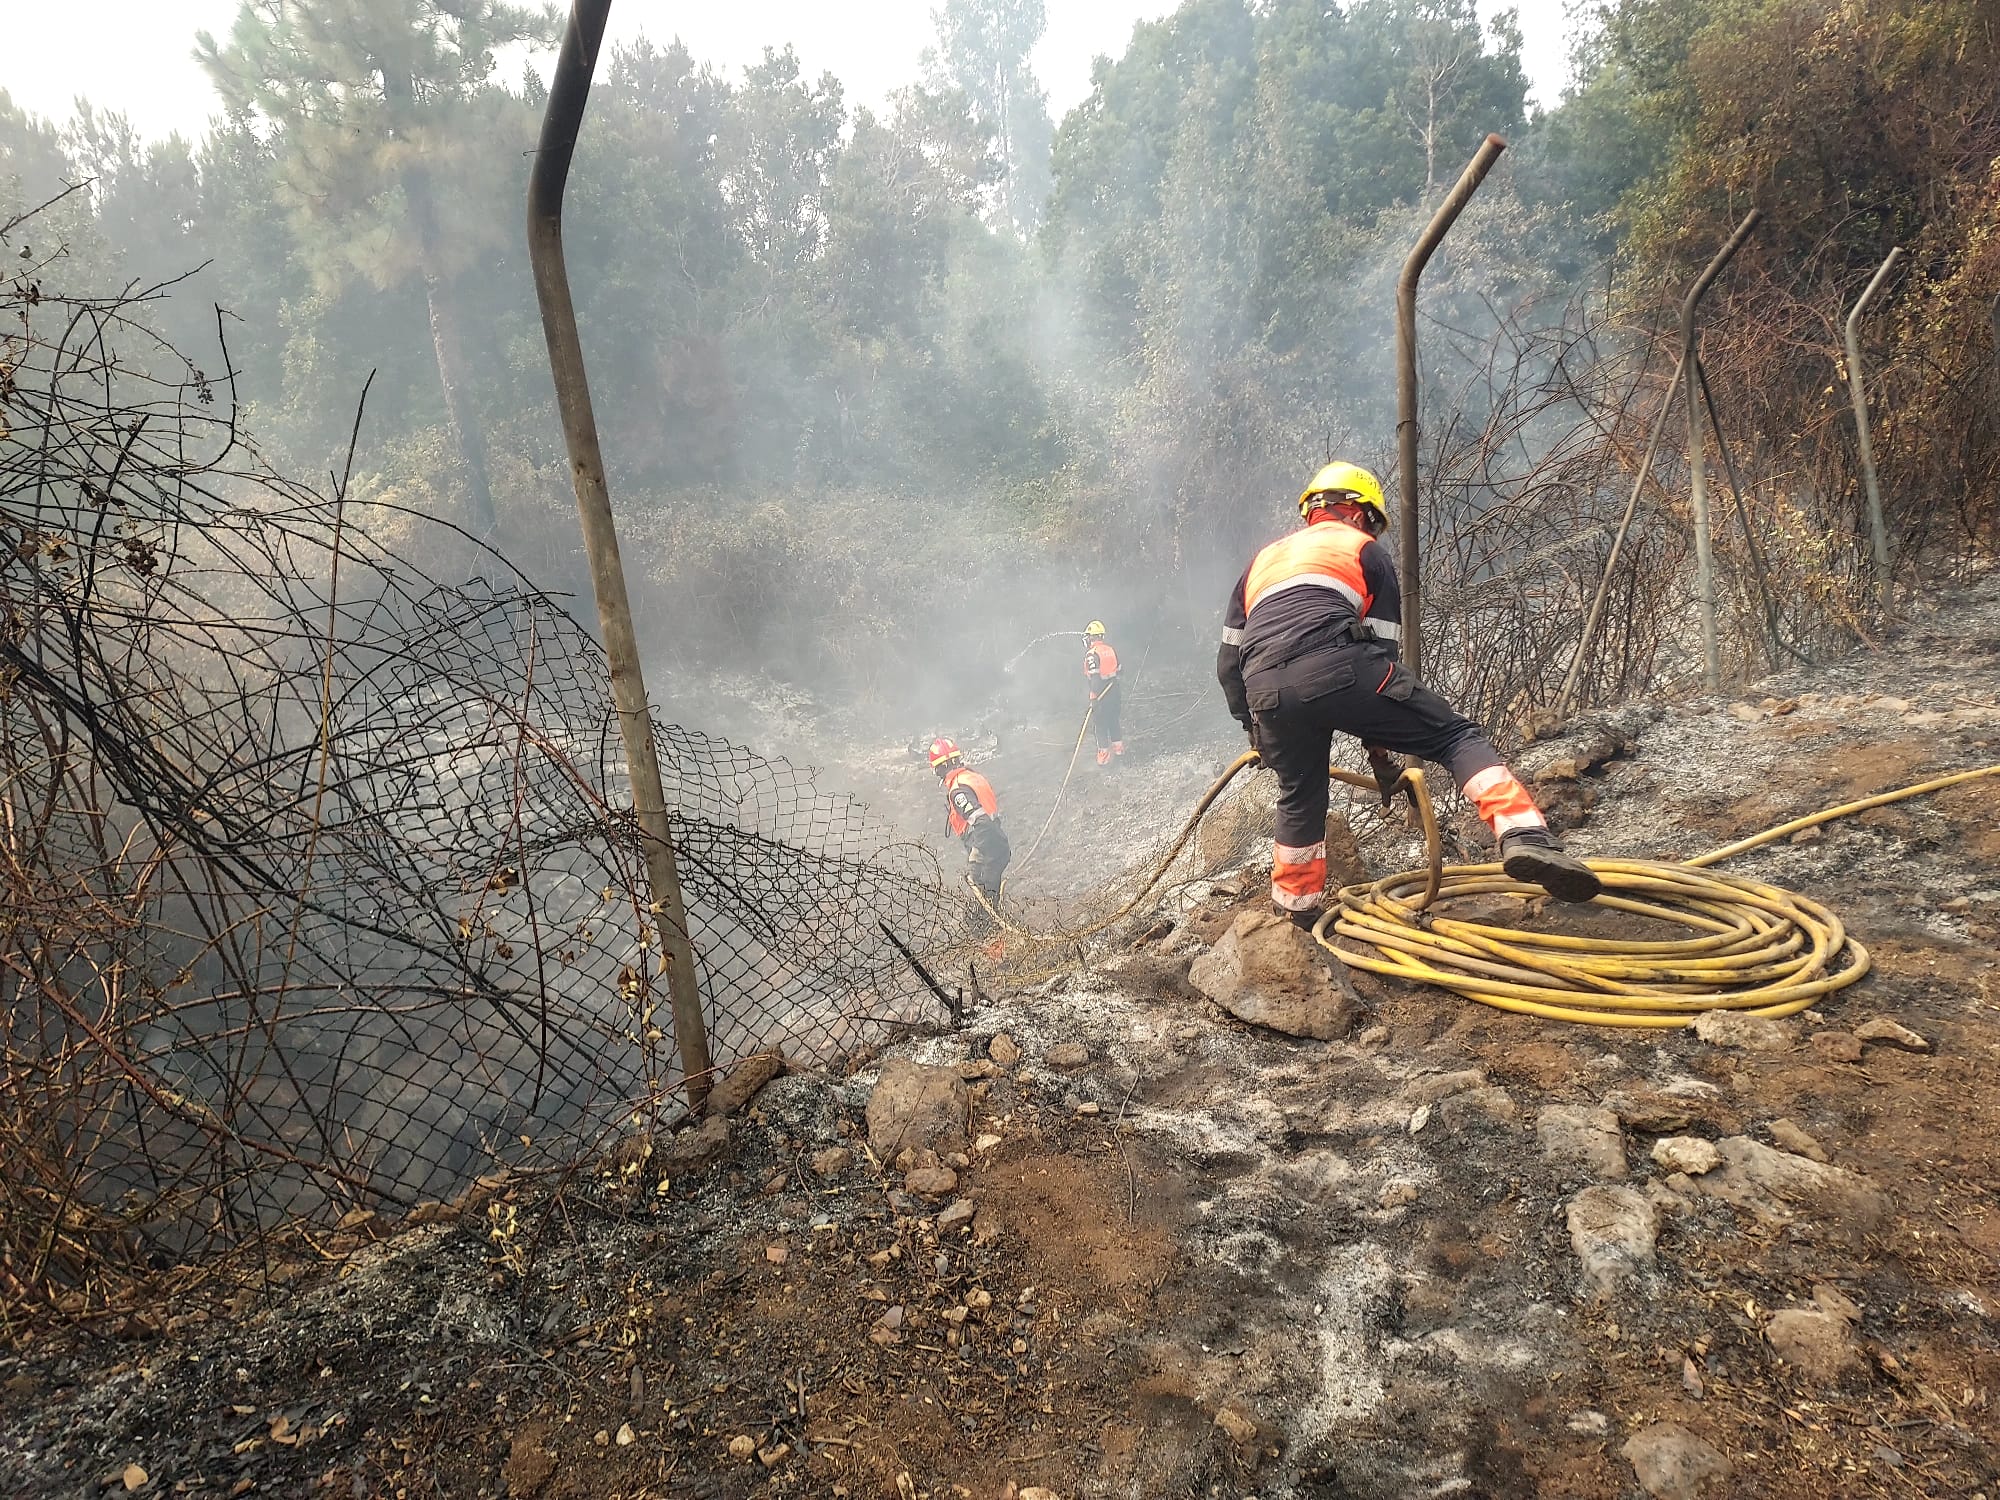 Bomberos de Lanzarote trabajan en la extinción del incendio que afecta a Tenerife